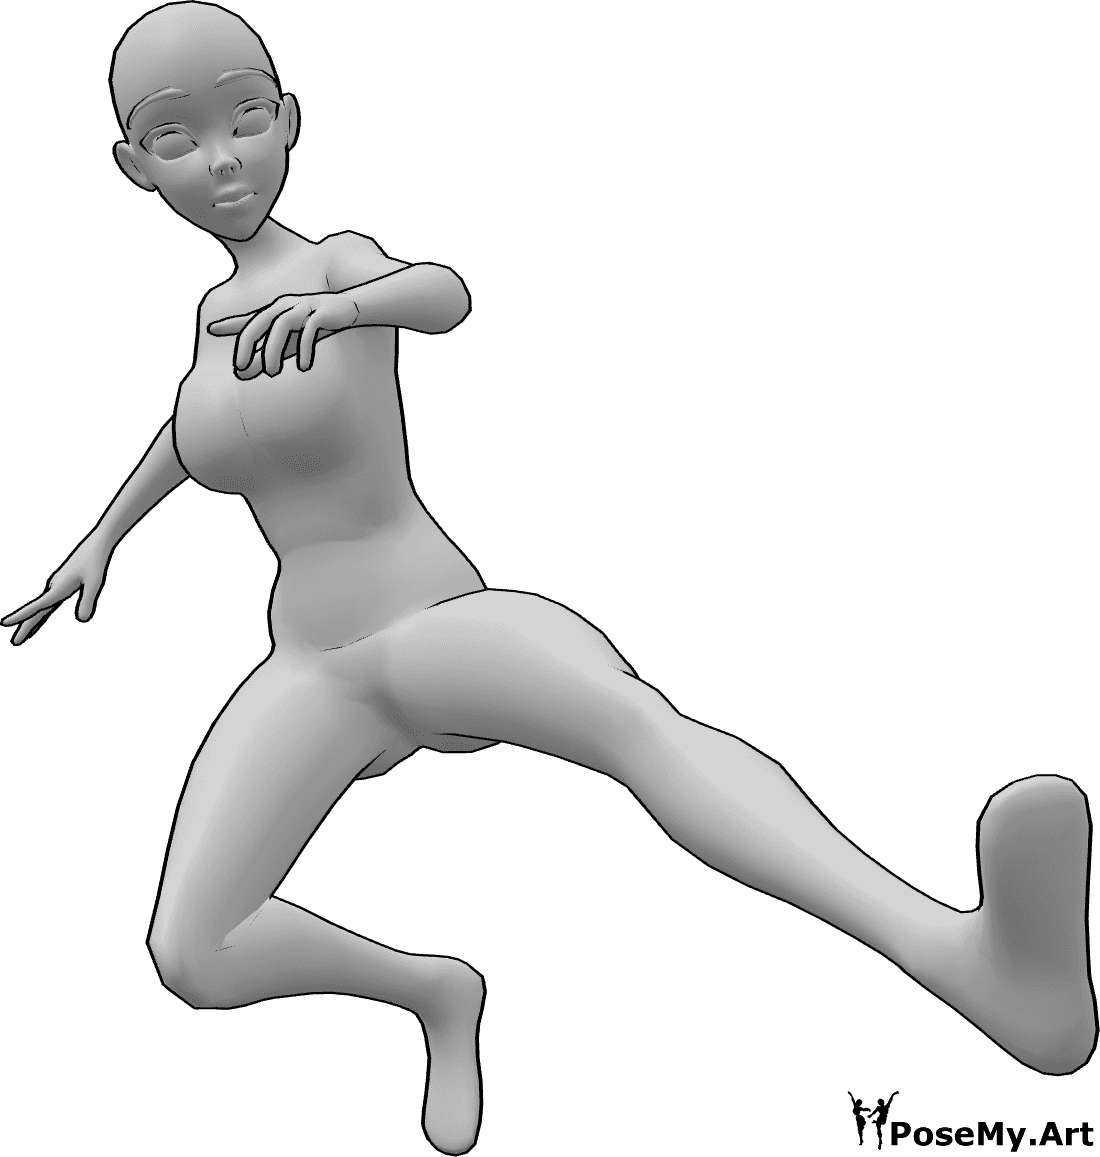 Référence des poses- Pose de coup de pied dynamique de l'anime - Une femme animée saute et donne des coups de pied en l'air avec son pied gauche, pose dynamique de coups de pied.